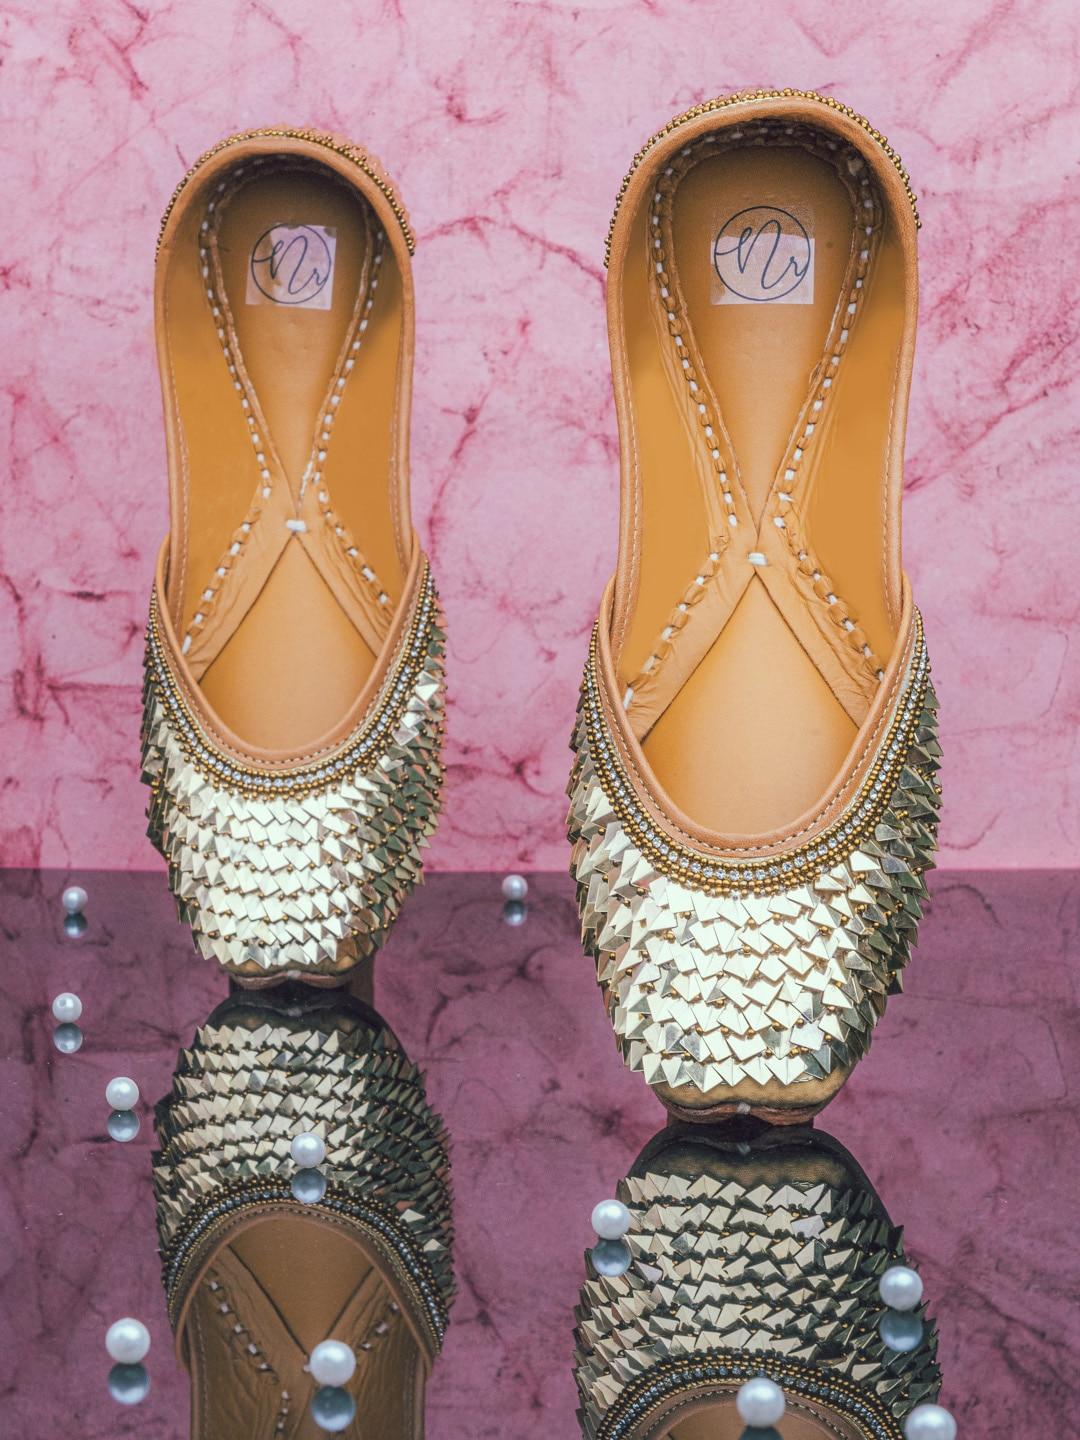 NR By Nidhi Rathi Women Gold-Toned Embellished Leather Ethnic Mojaris